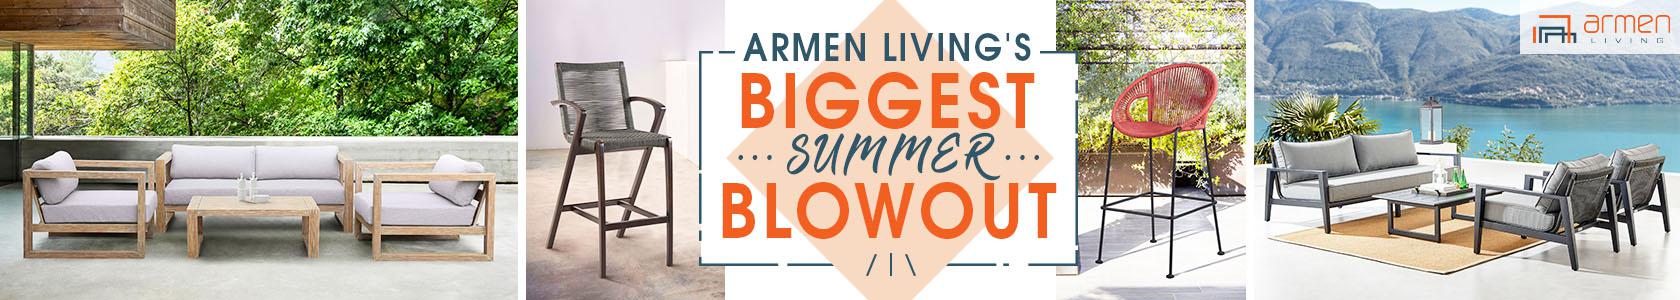 Armen Living Summer banner